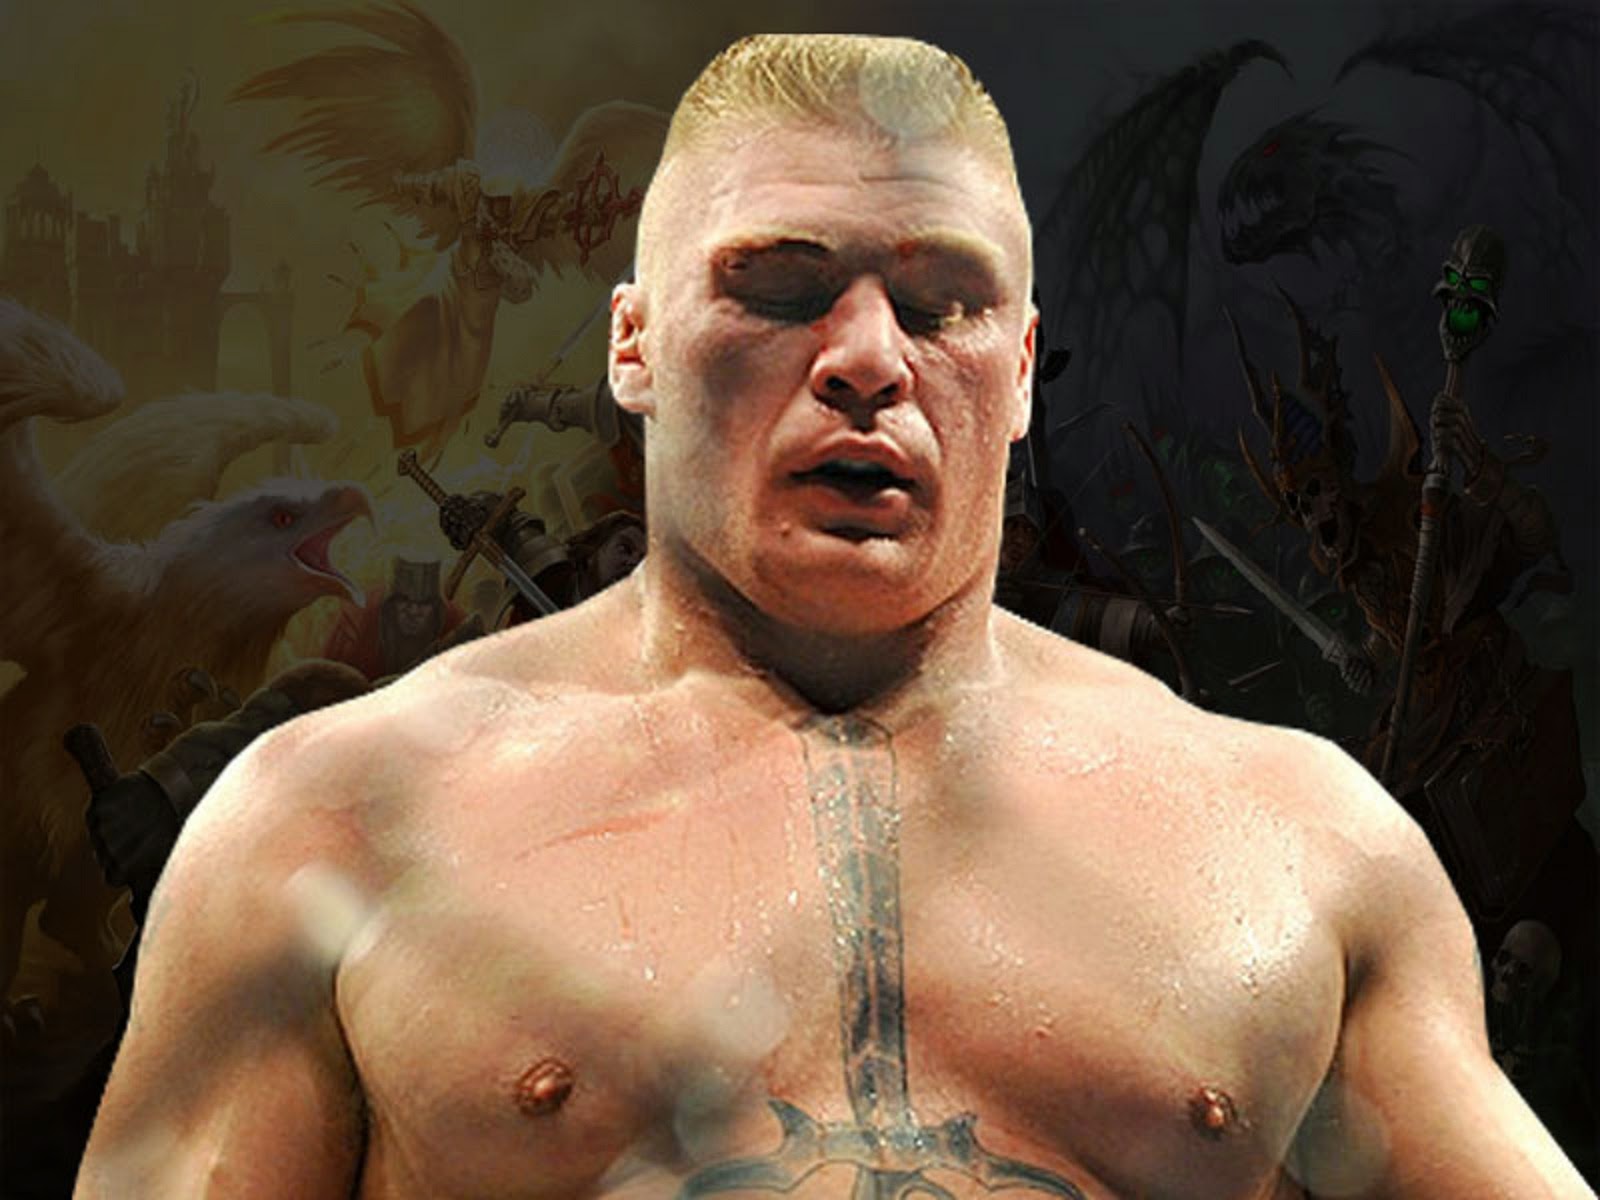 Free download Brock Lesnar Hd Wallpapers WWE HD WALLPAPER FREE DOWNLOAD